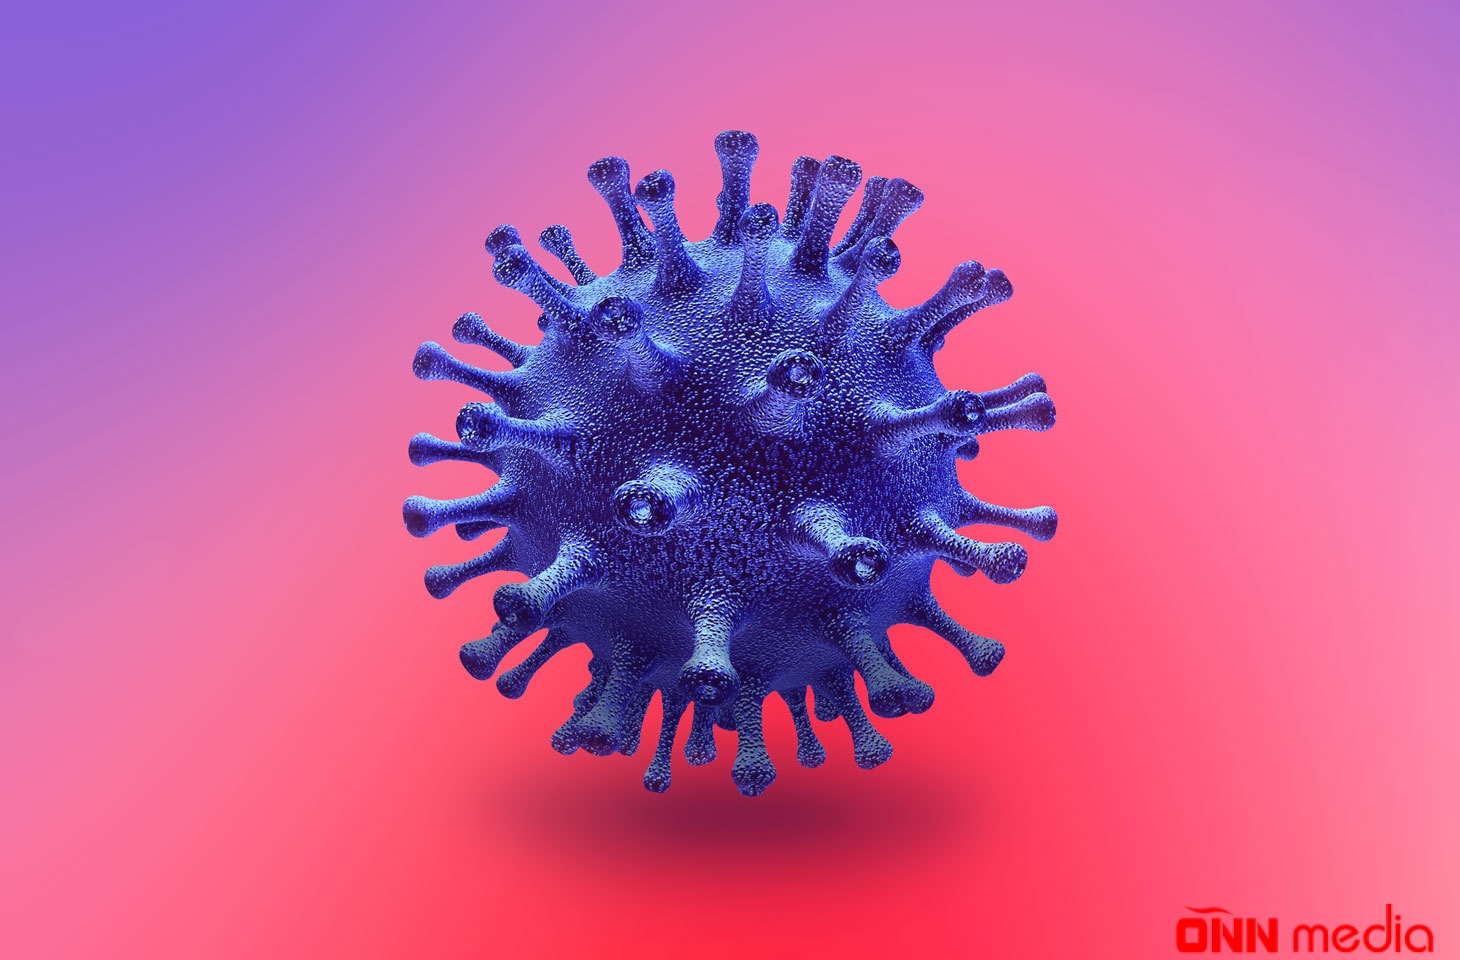 Koronavirus xəstələrinin neçəsinin vəziyyəti ağırdır? – TƏBİB AÇIQLADI